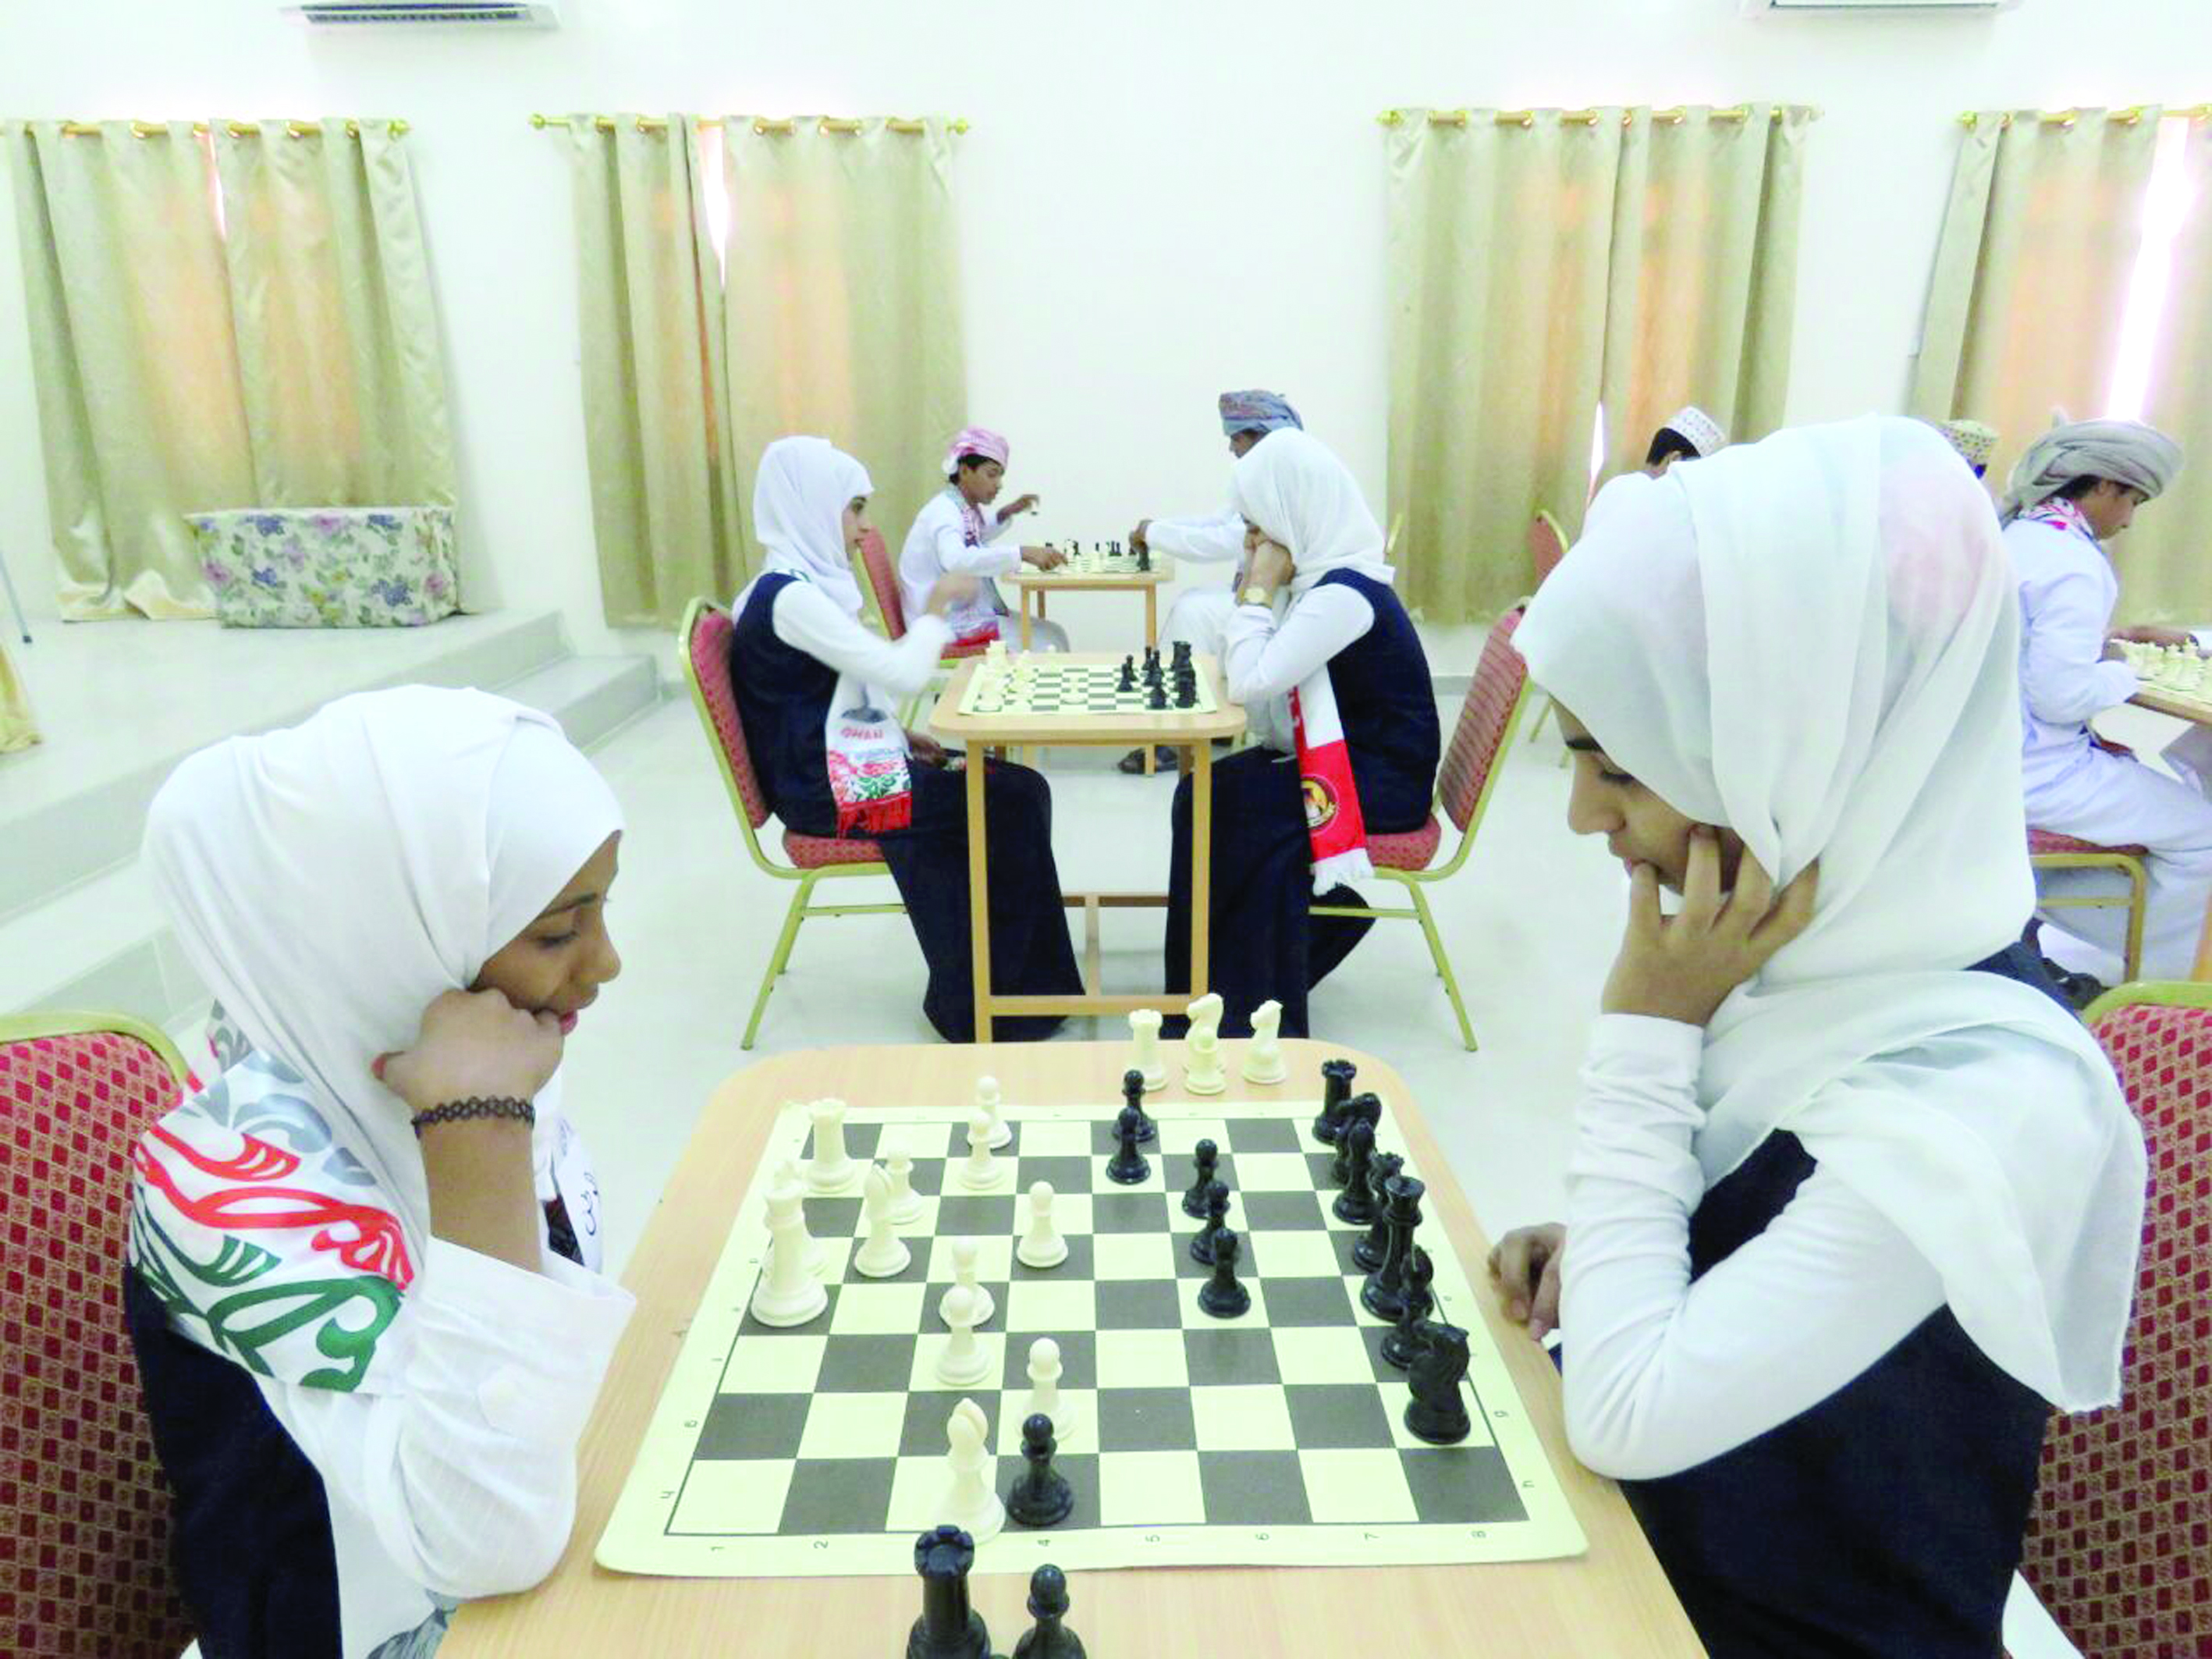 اتحاد الرياضة المدرسية ينظم مهرجان الشطرنج المدرسي بالوسطى